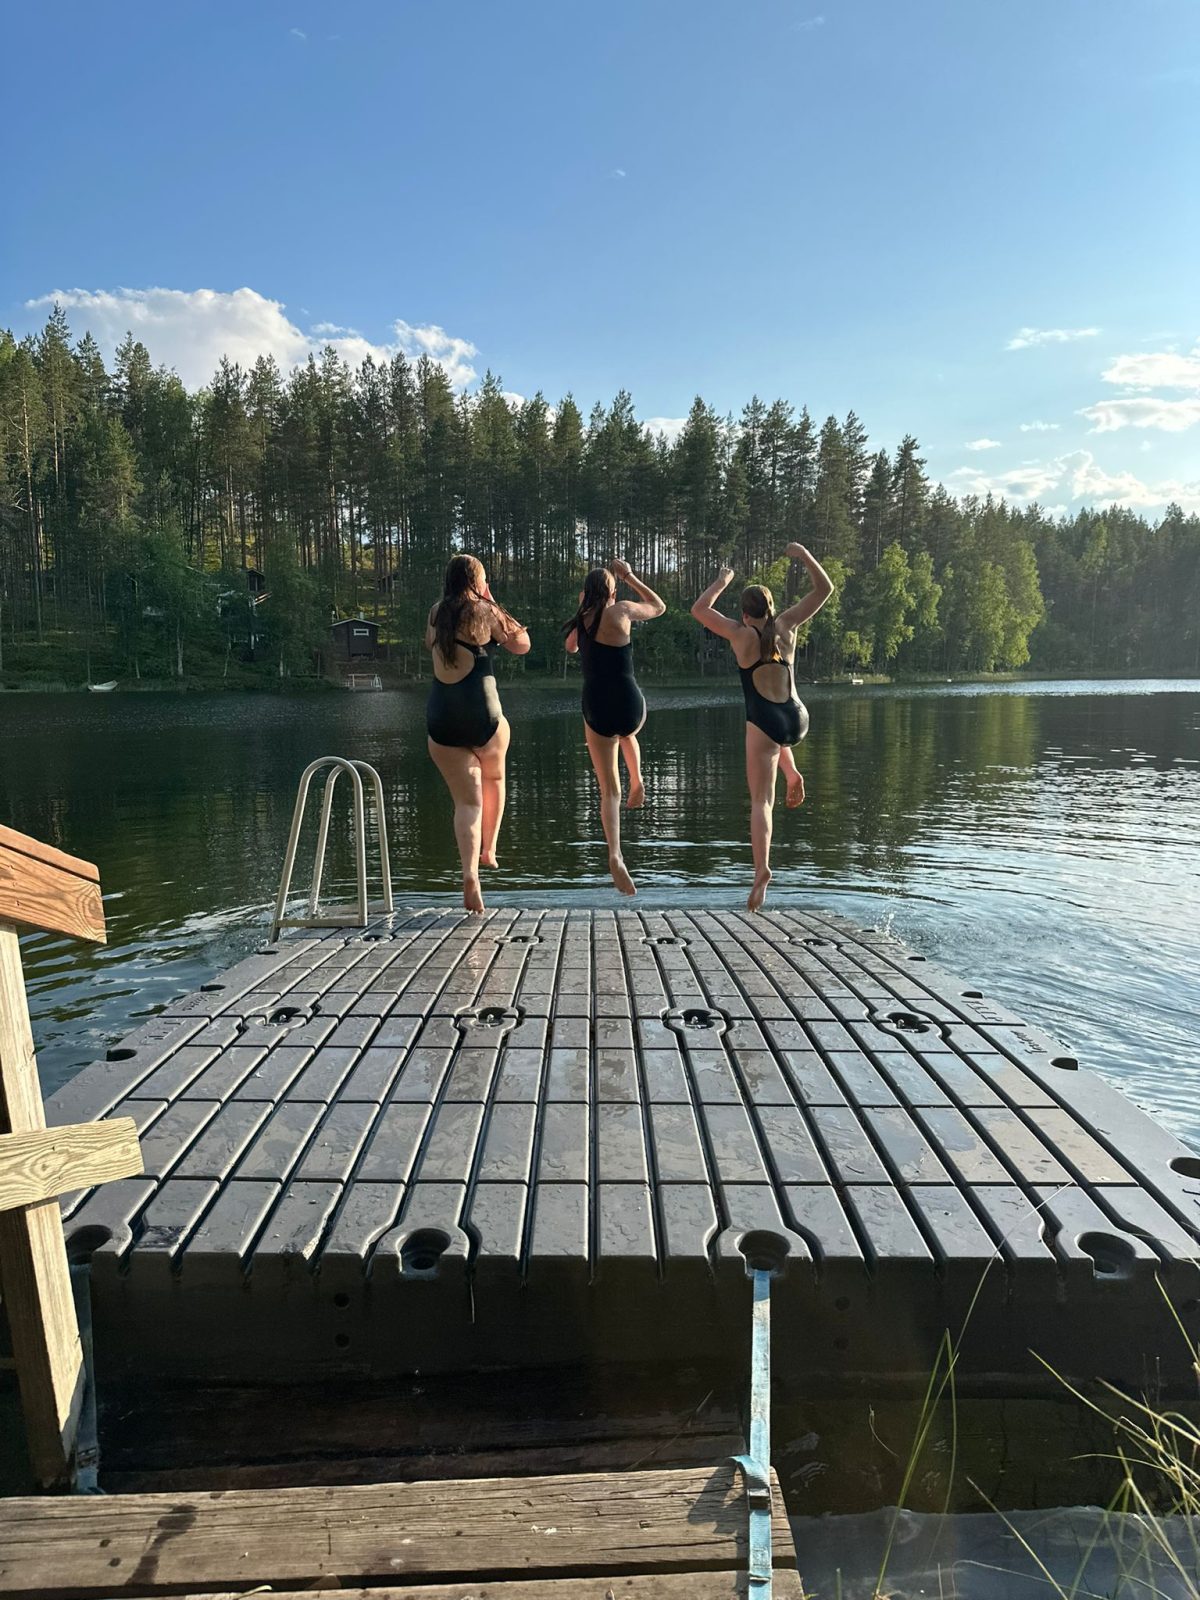 Kolme nuorta hyppäämässä laiturilta järveen.